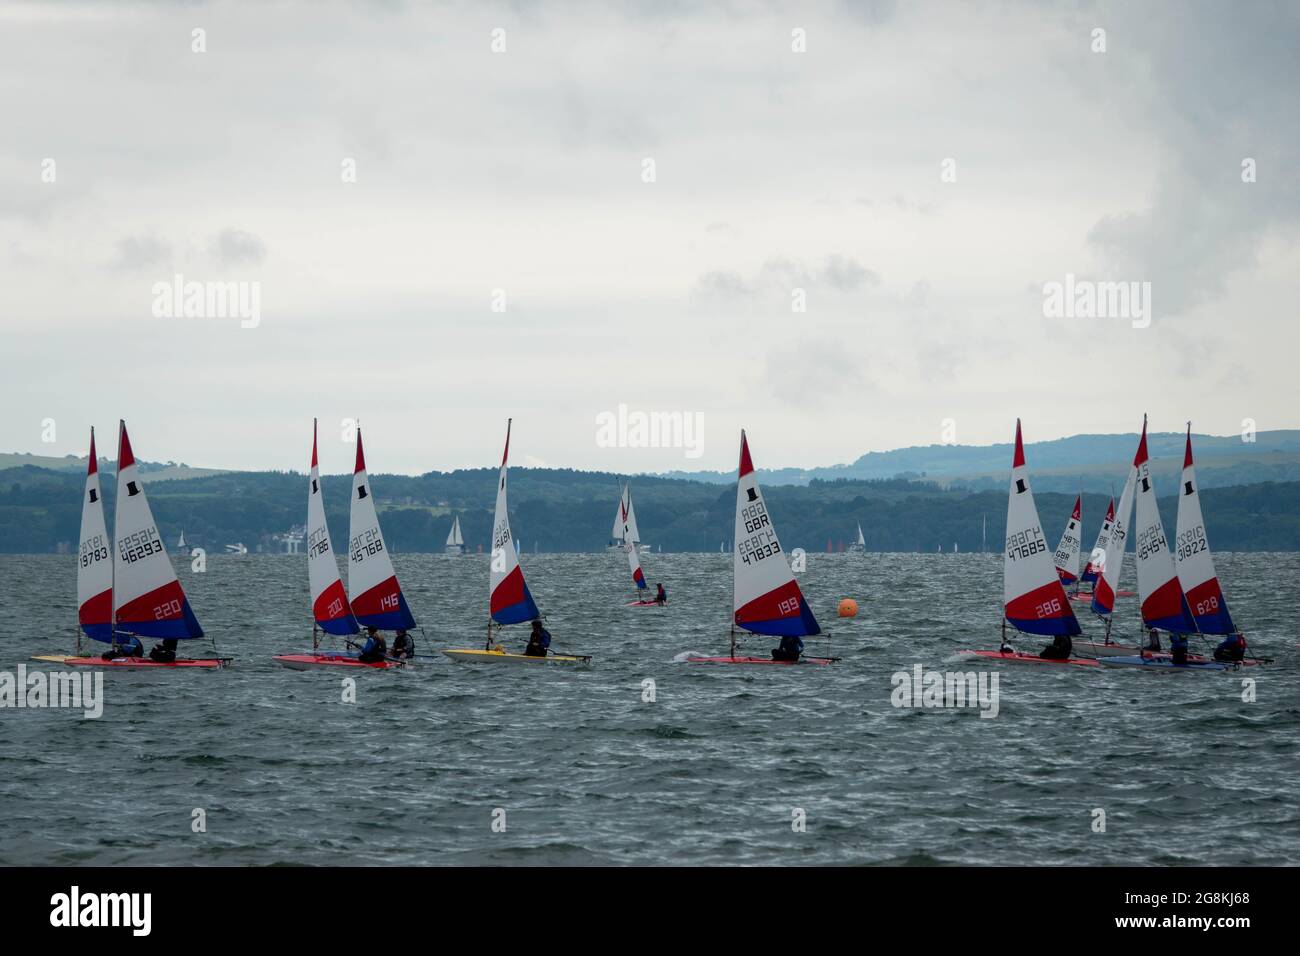 Segelboote standen im Meer bereit, um an einem stürmischen Sommertag ein Rennen zu starten Stockfoto